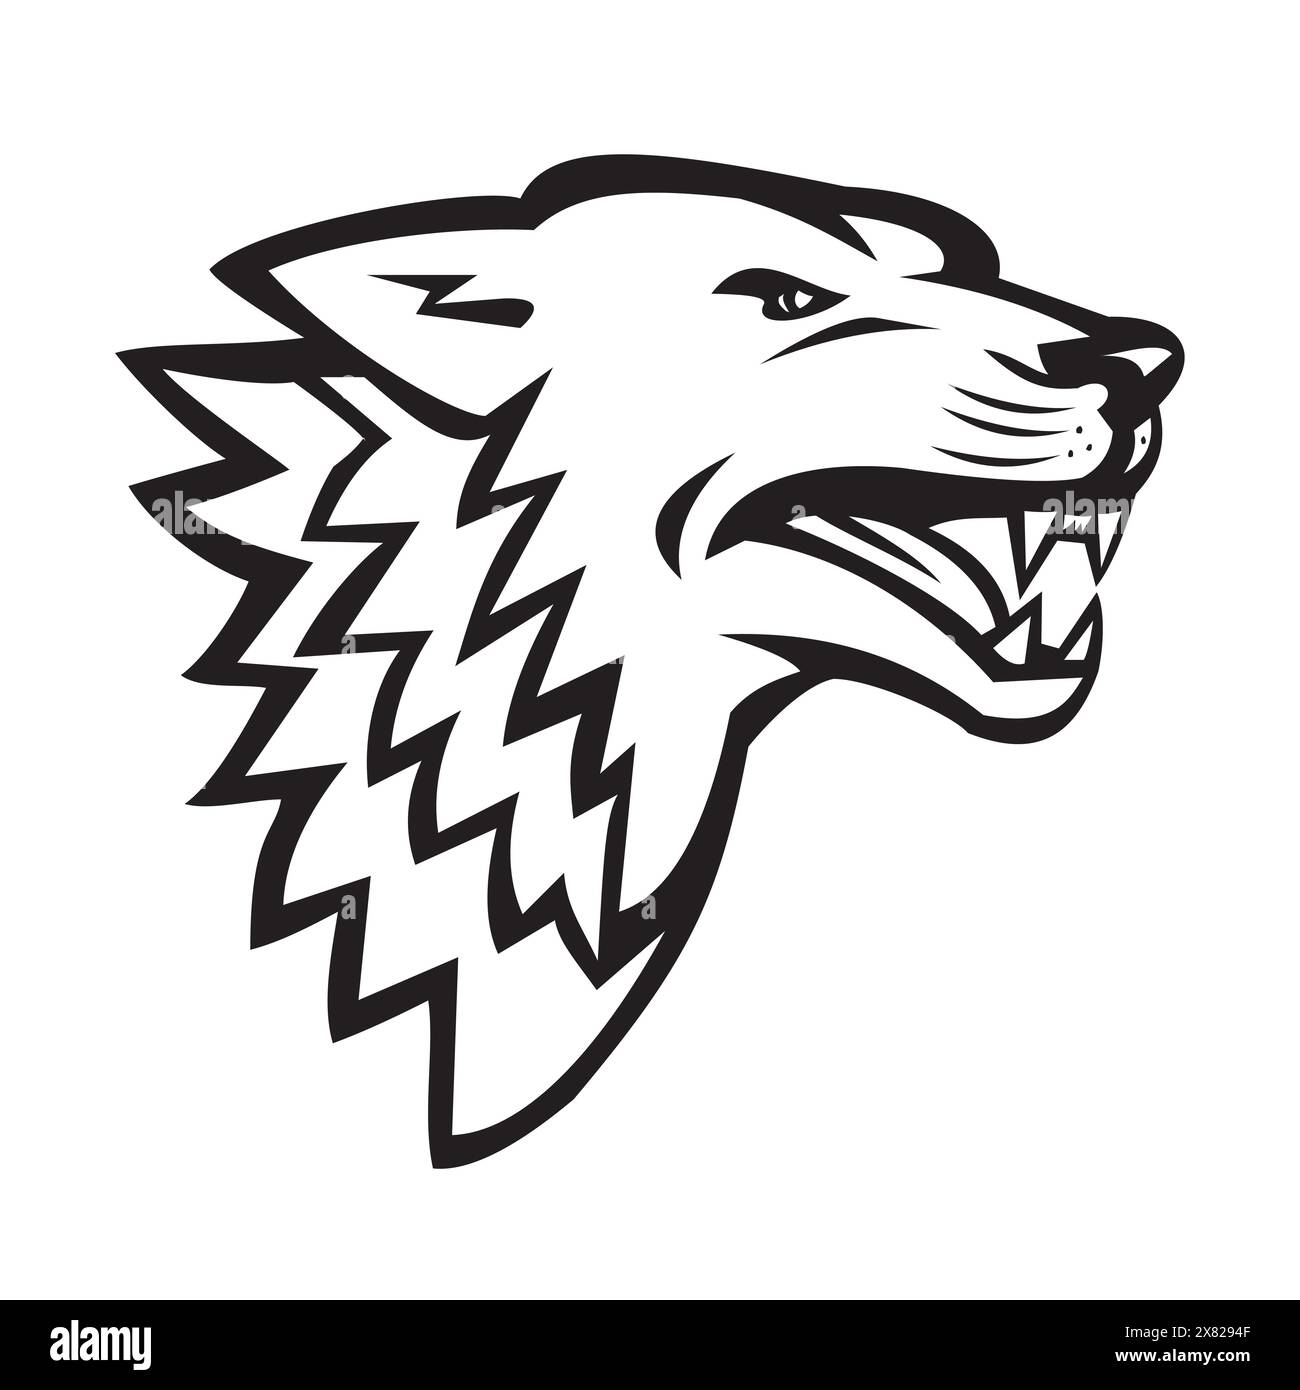 Sportmaskottchen-Symbol Darstellung des Kopfes eines wütenden Wolfs oder eines knurrenden wilden Hundes auf isoliertem Hintergrund im Retro-Schwarz-Weiß-Stil. Stock Vektor